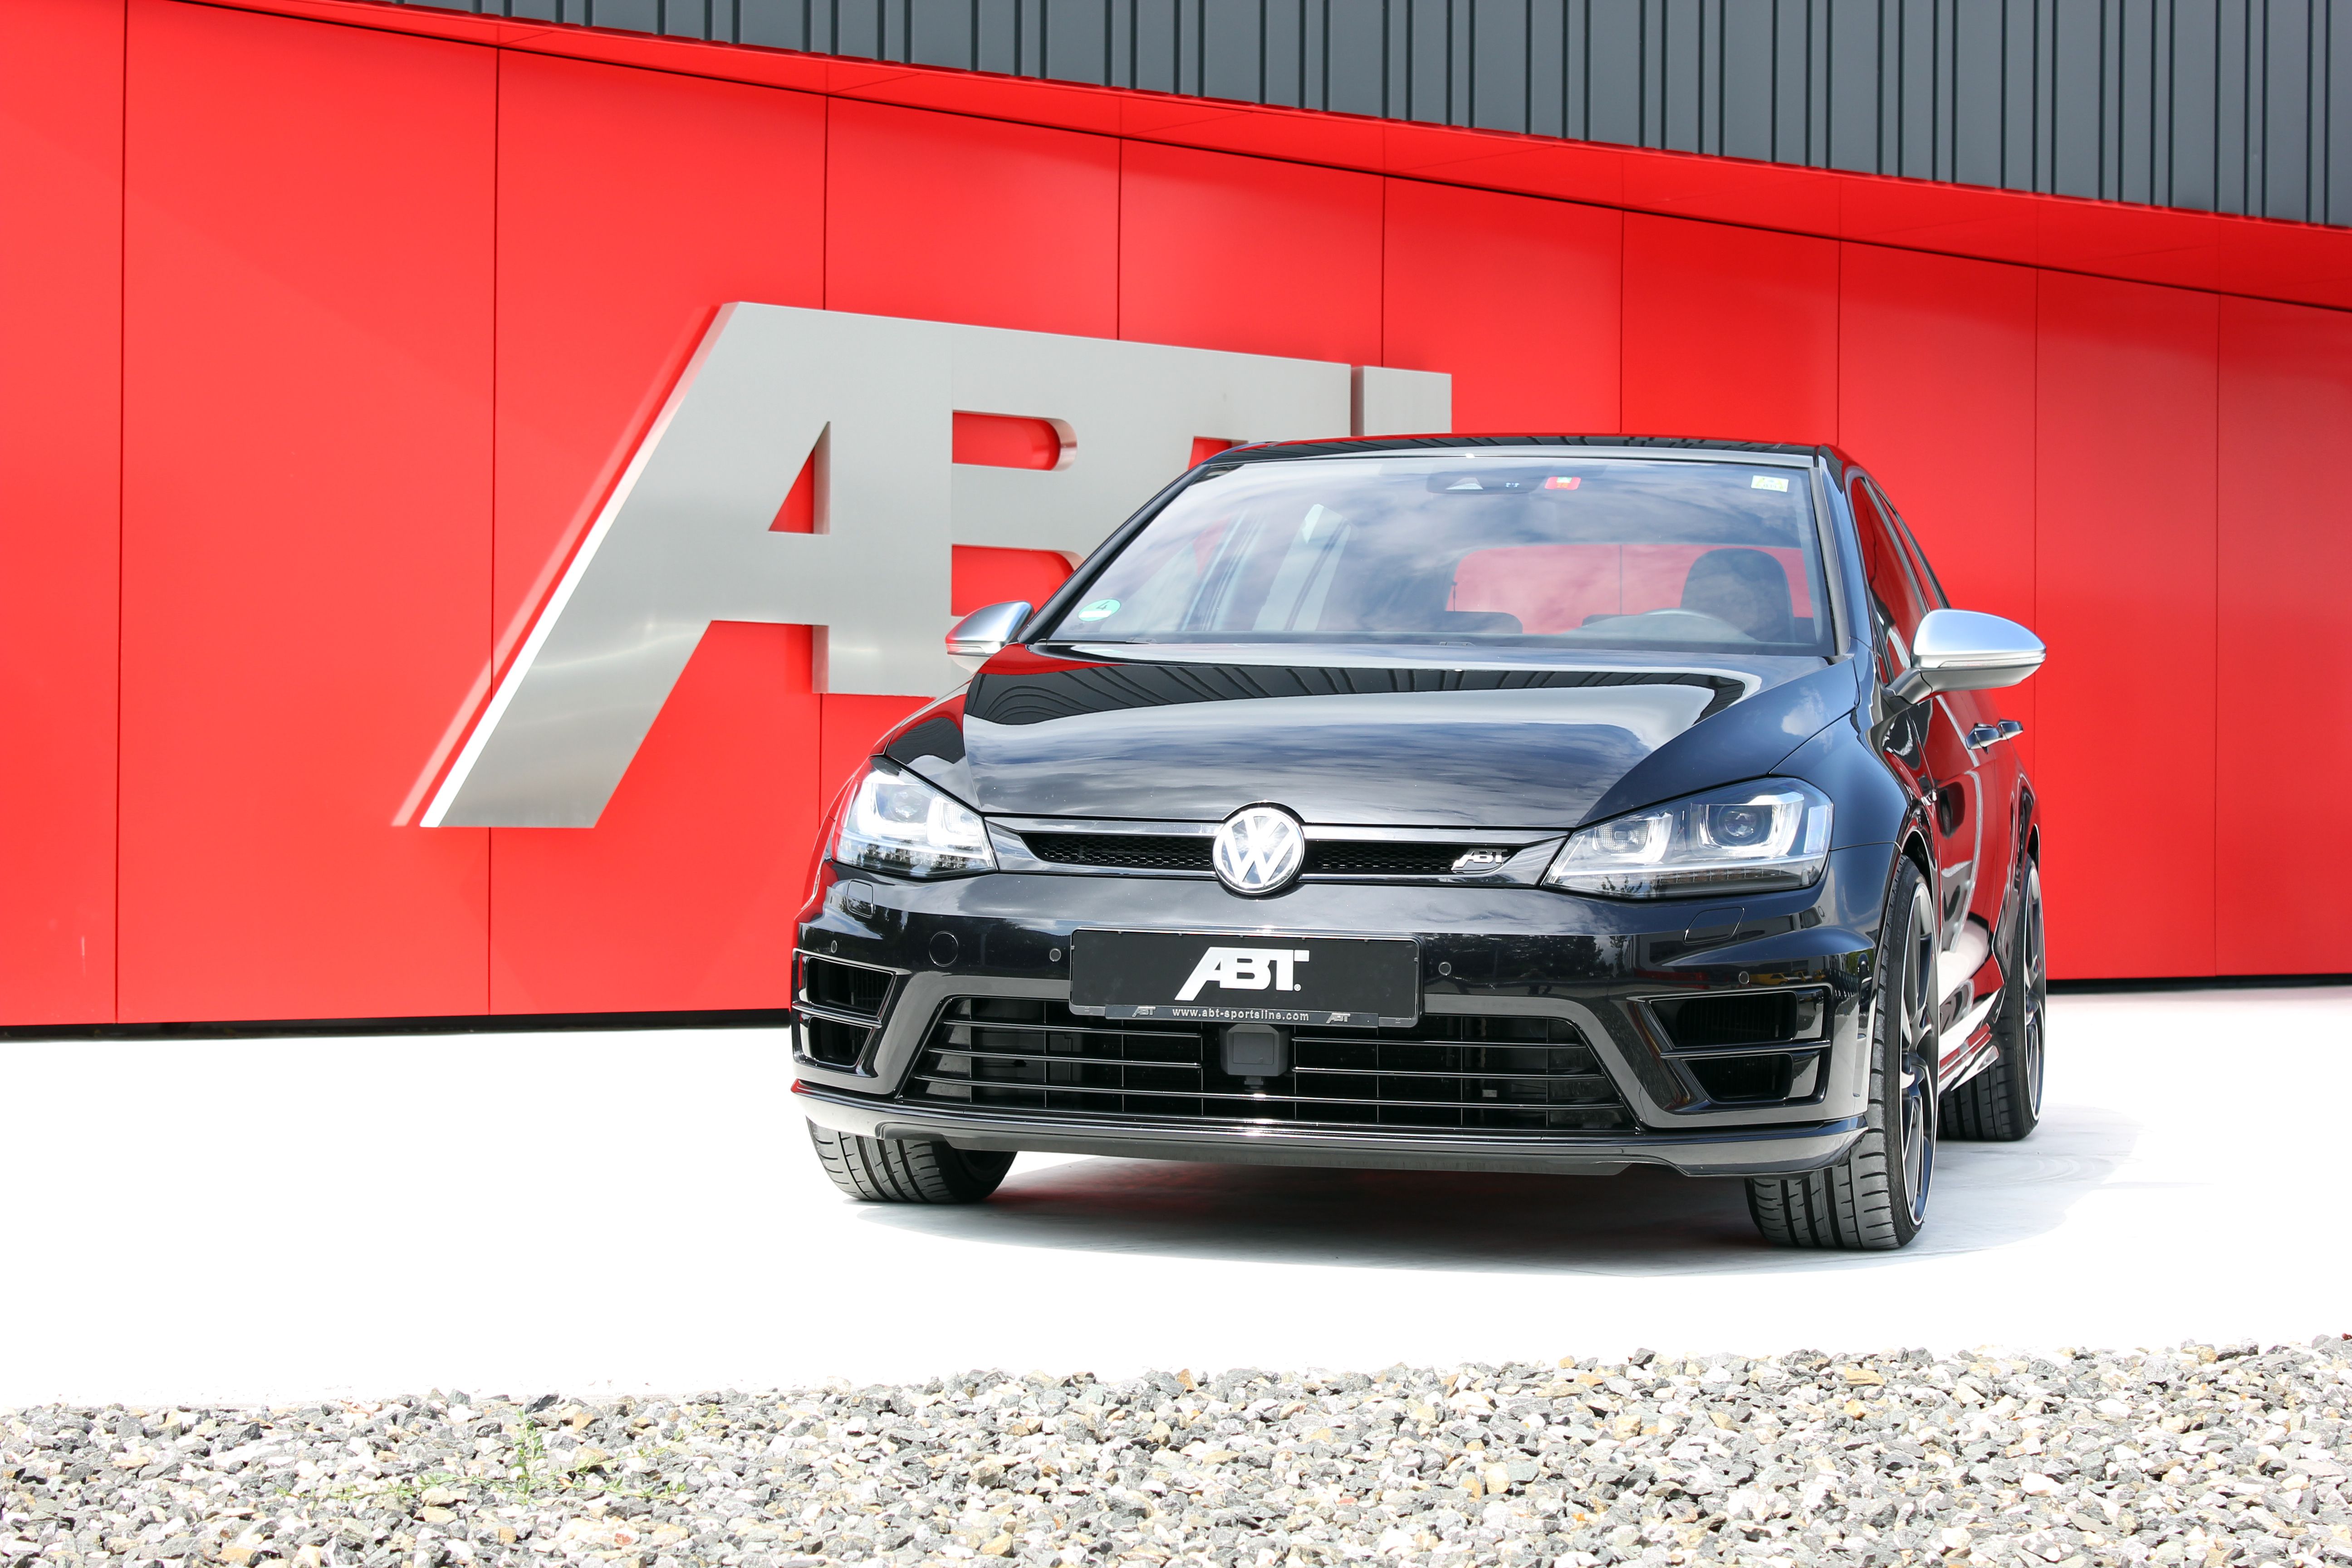 2014 Volkswagen Golf R by ABT Sportsline